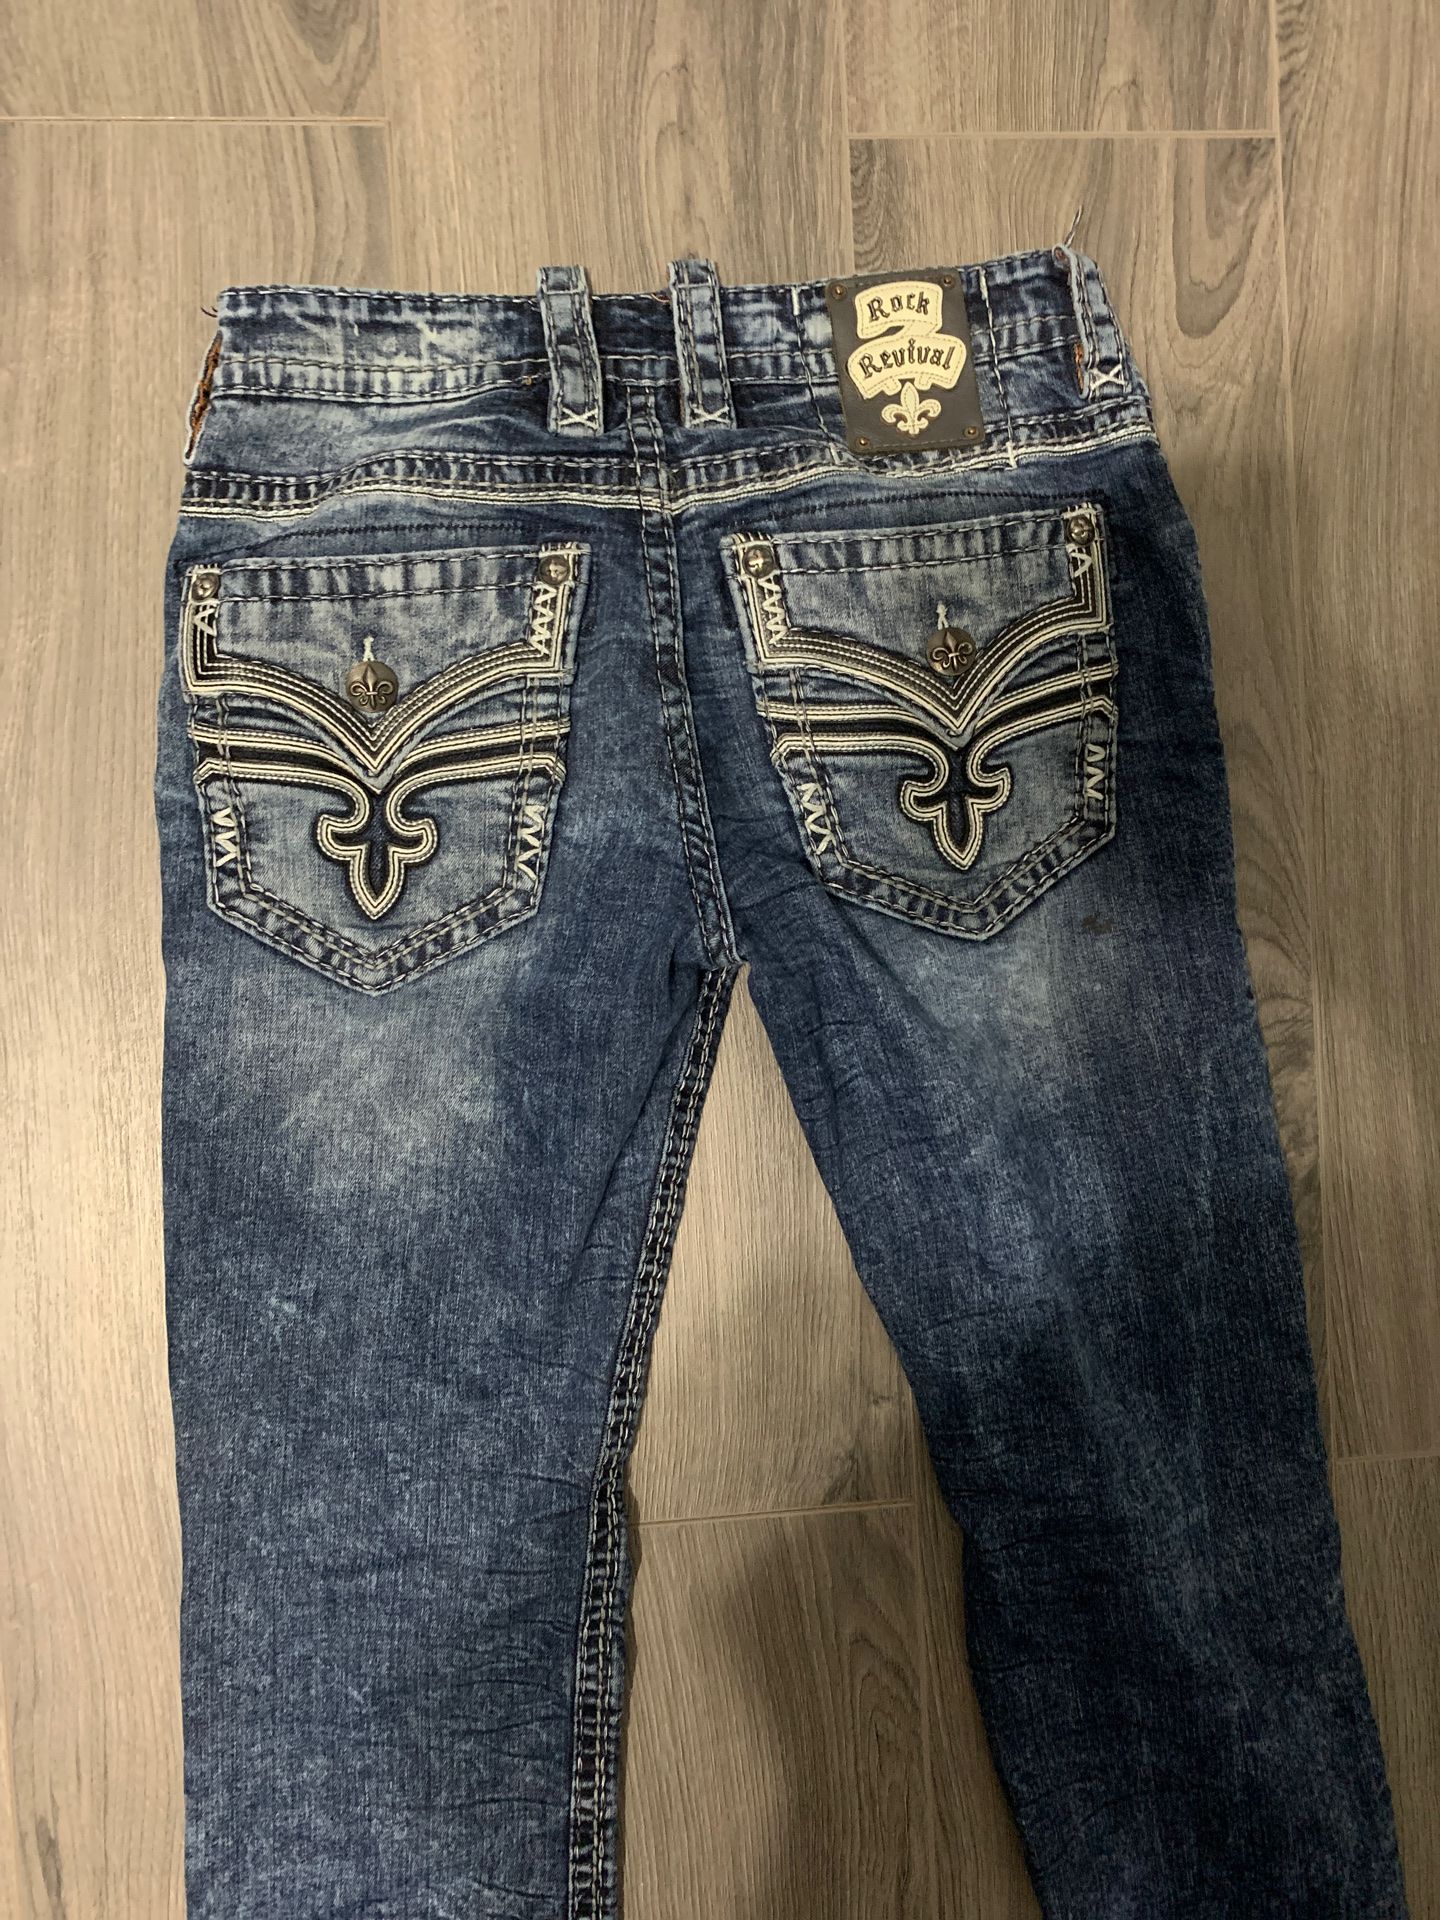 Men’s Rock Revival Jeans